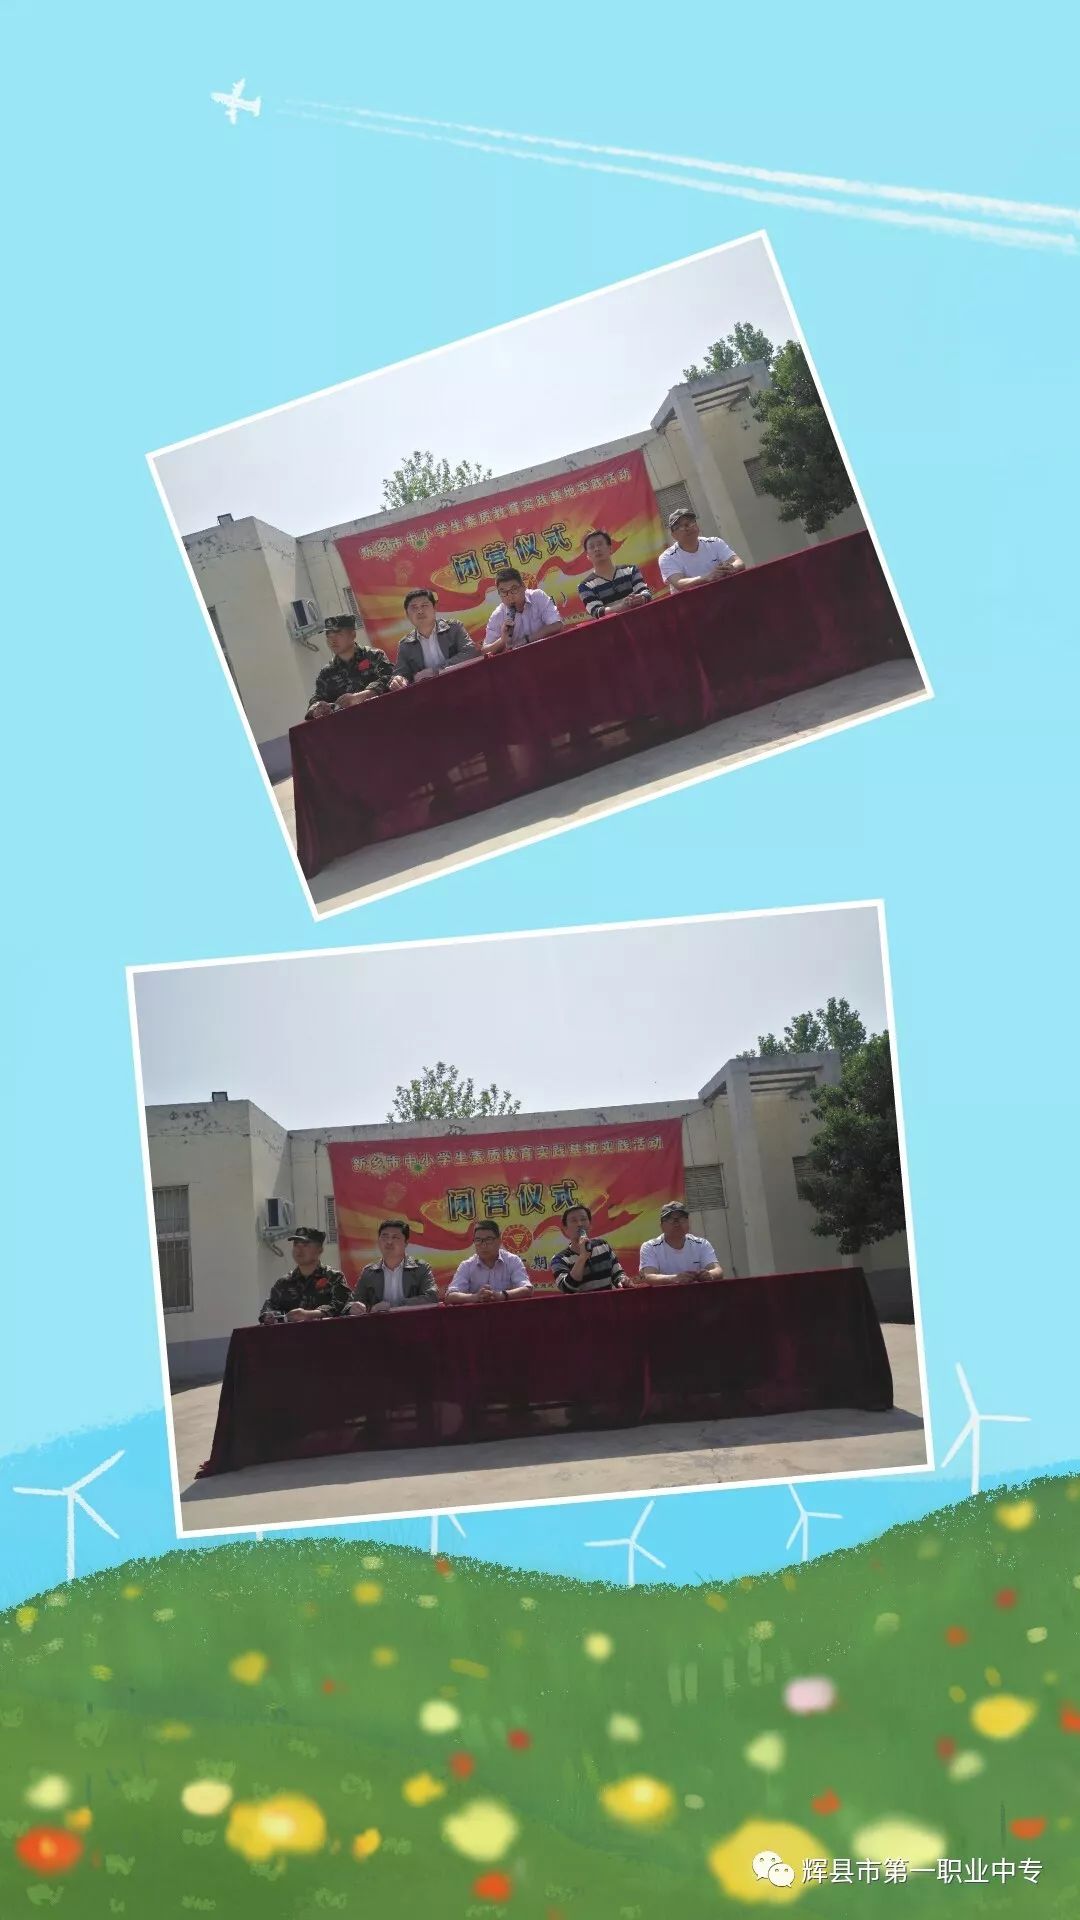 辉县市中小学生素质教育实践基地2019年第十期综合实践回顾总结峪河镇